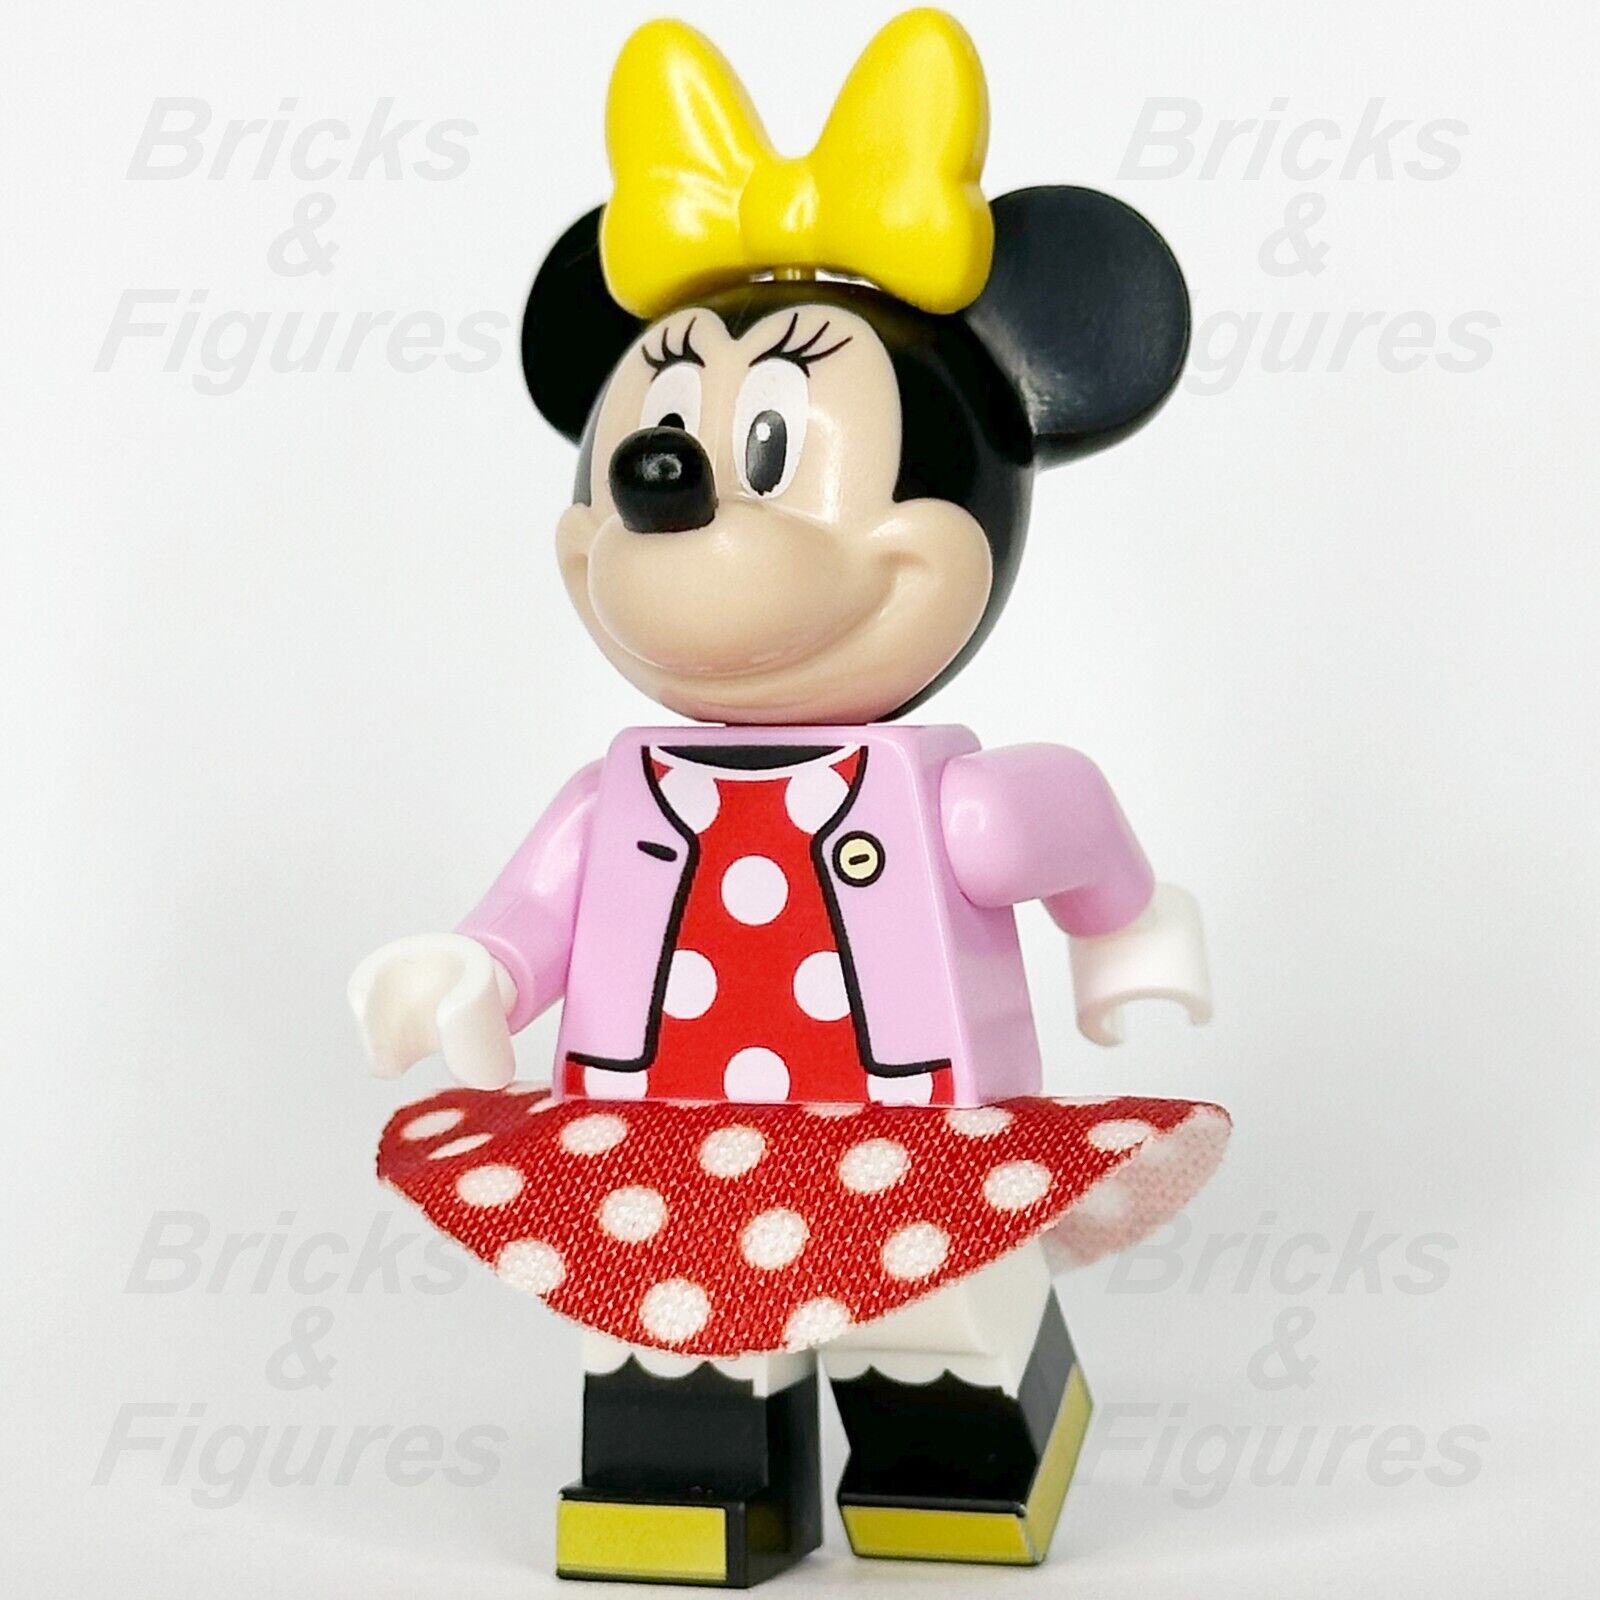 LEGO Disney Minnie Mouse Minifigure Disney 100 Red Polka Dot Dress 43212 dis089